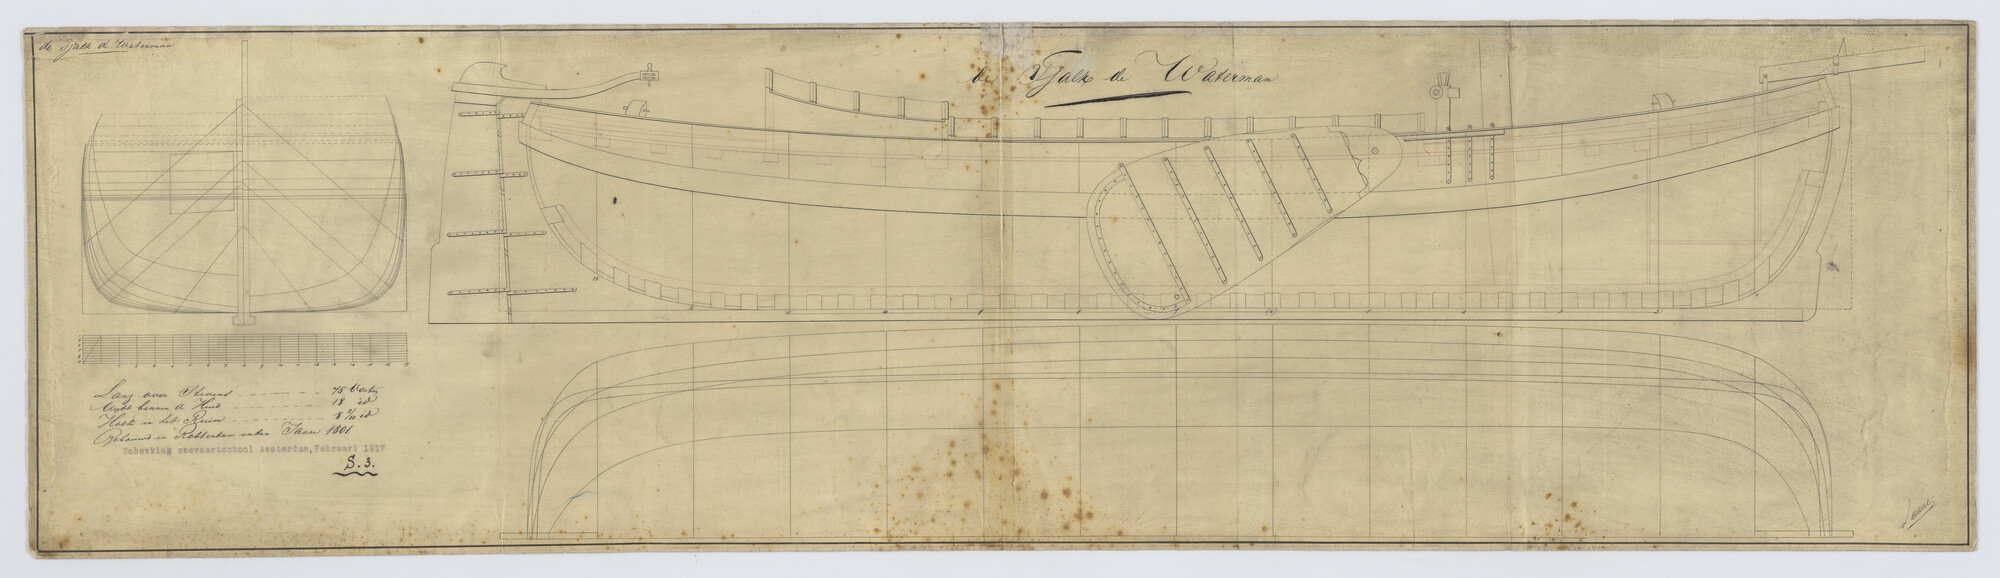 S.0003(05)005; Lijnenplannen van de tjalk 'Waterman'; technische tekening